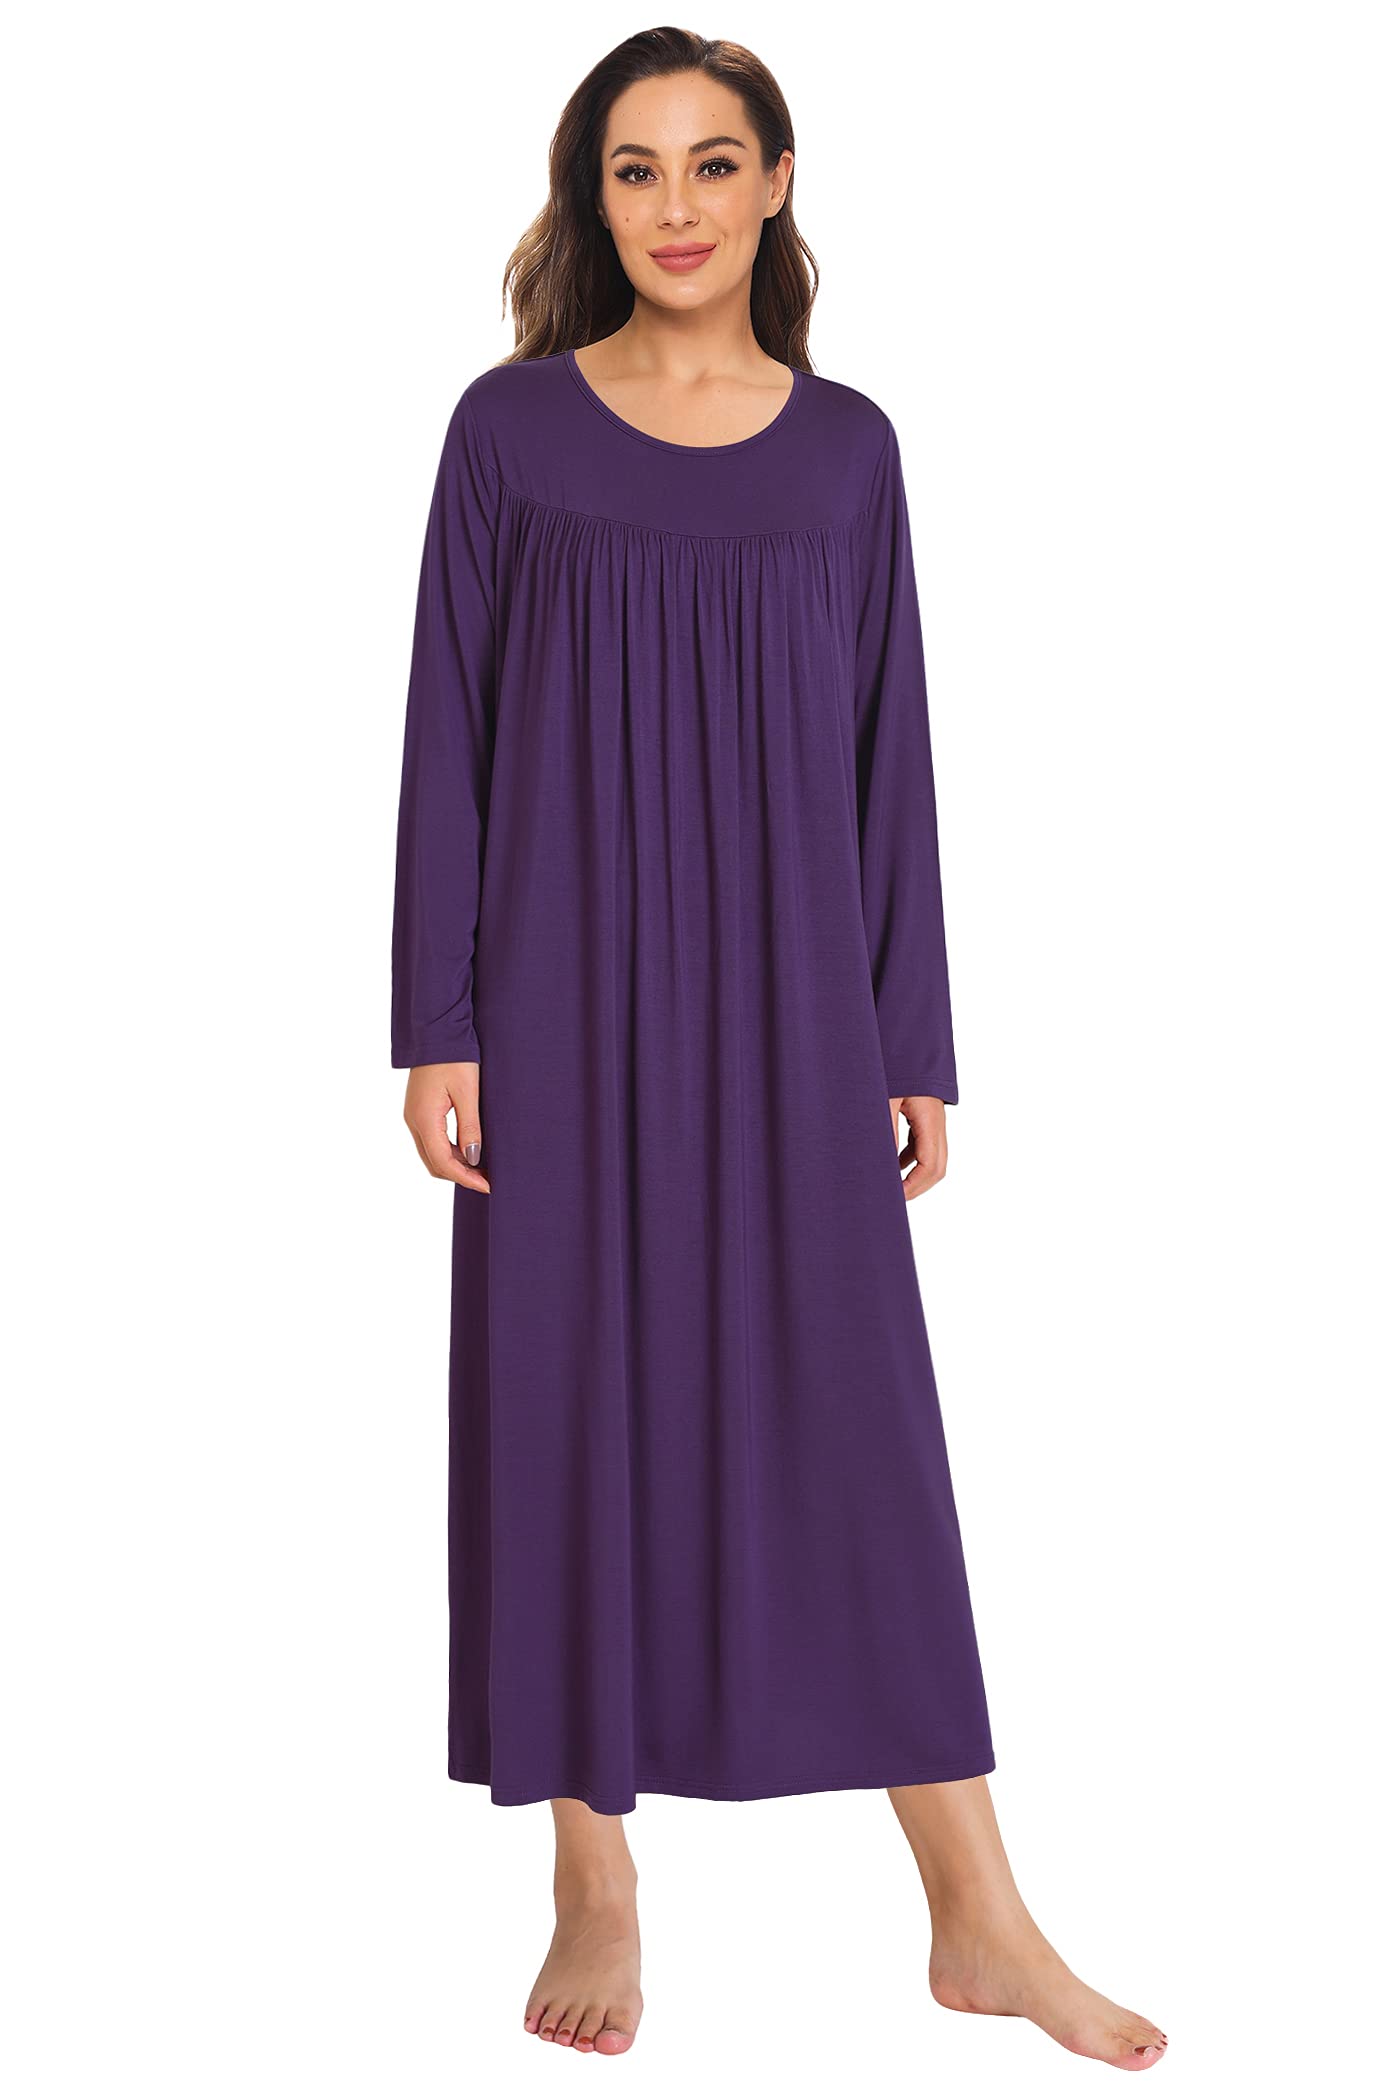 Women's Soft Bamboo Viscose Long Sleeves Nightgown – Latuza